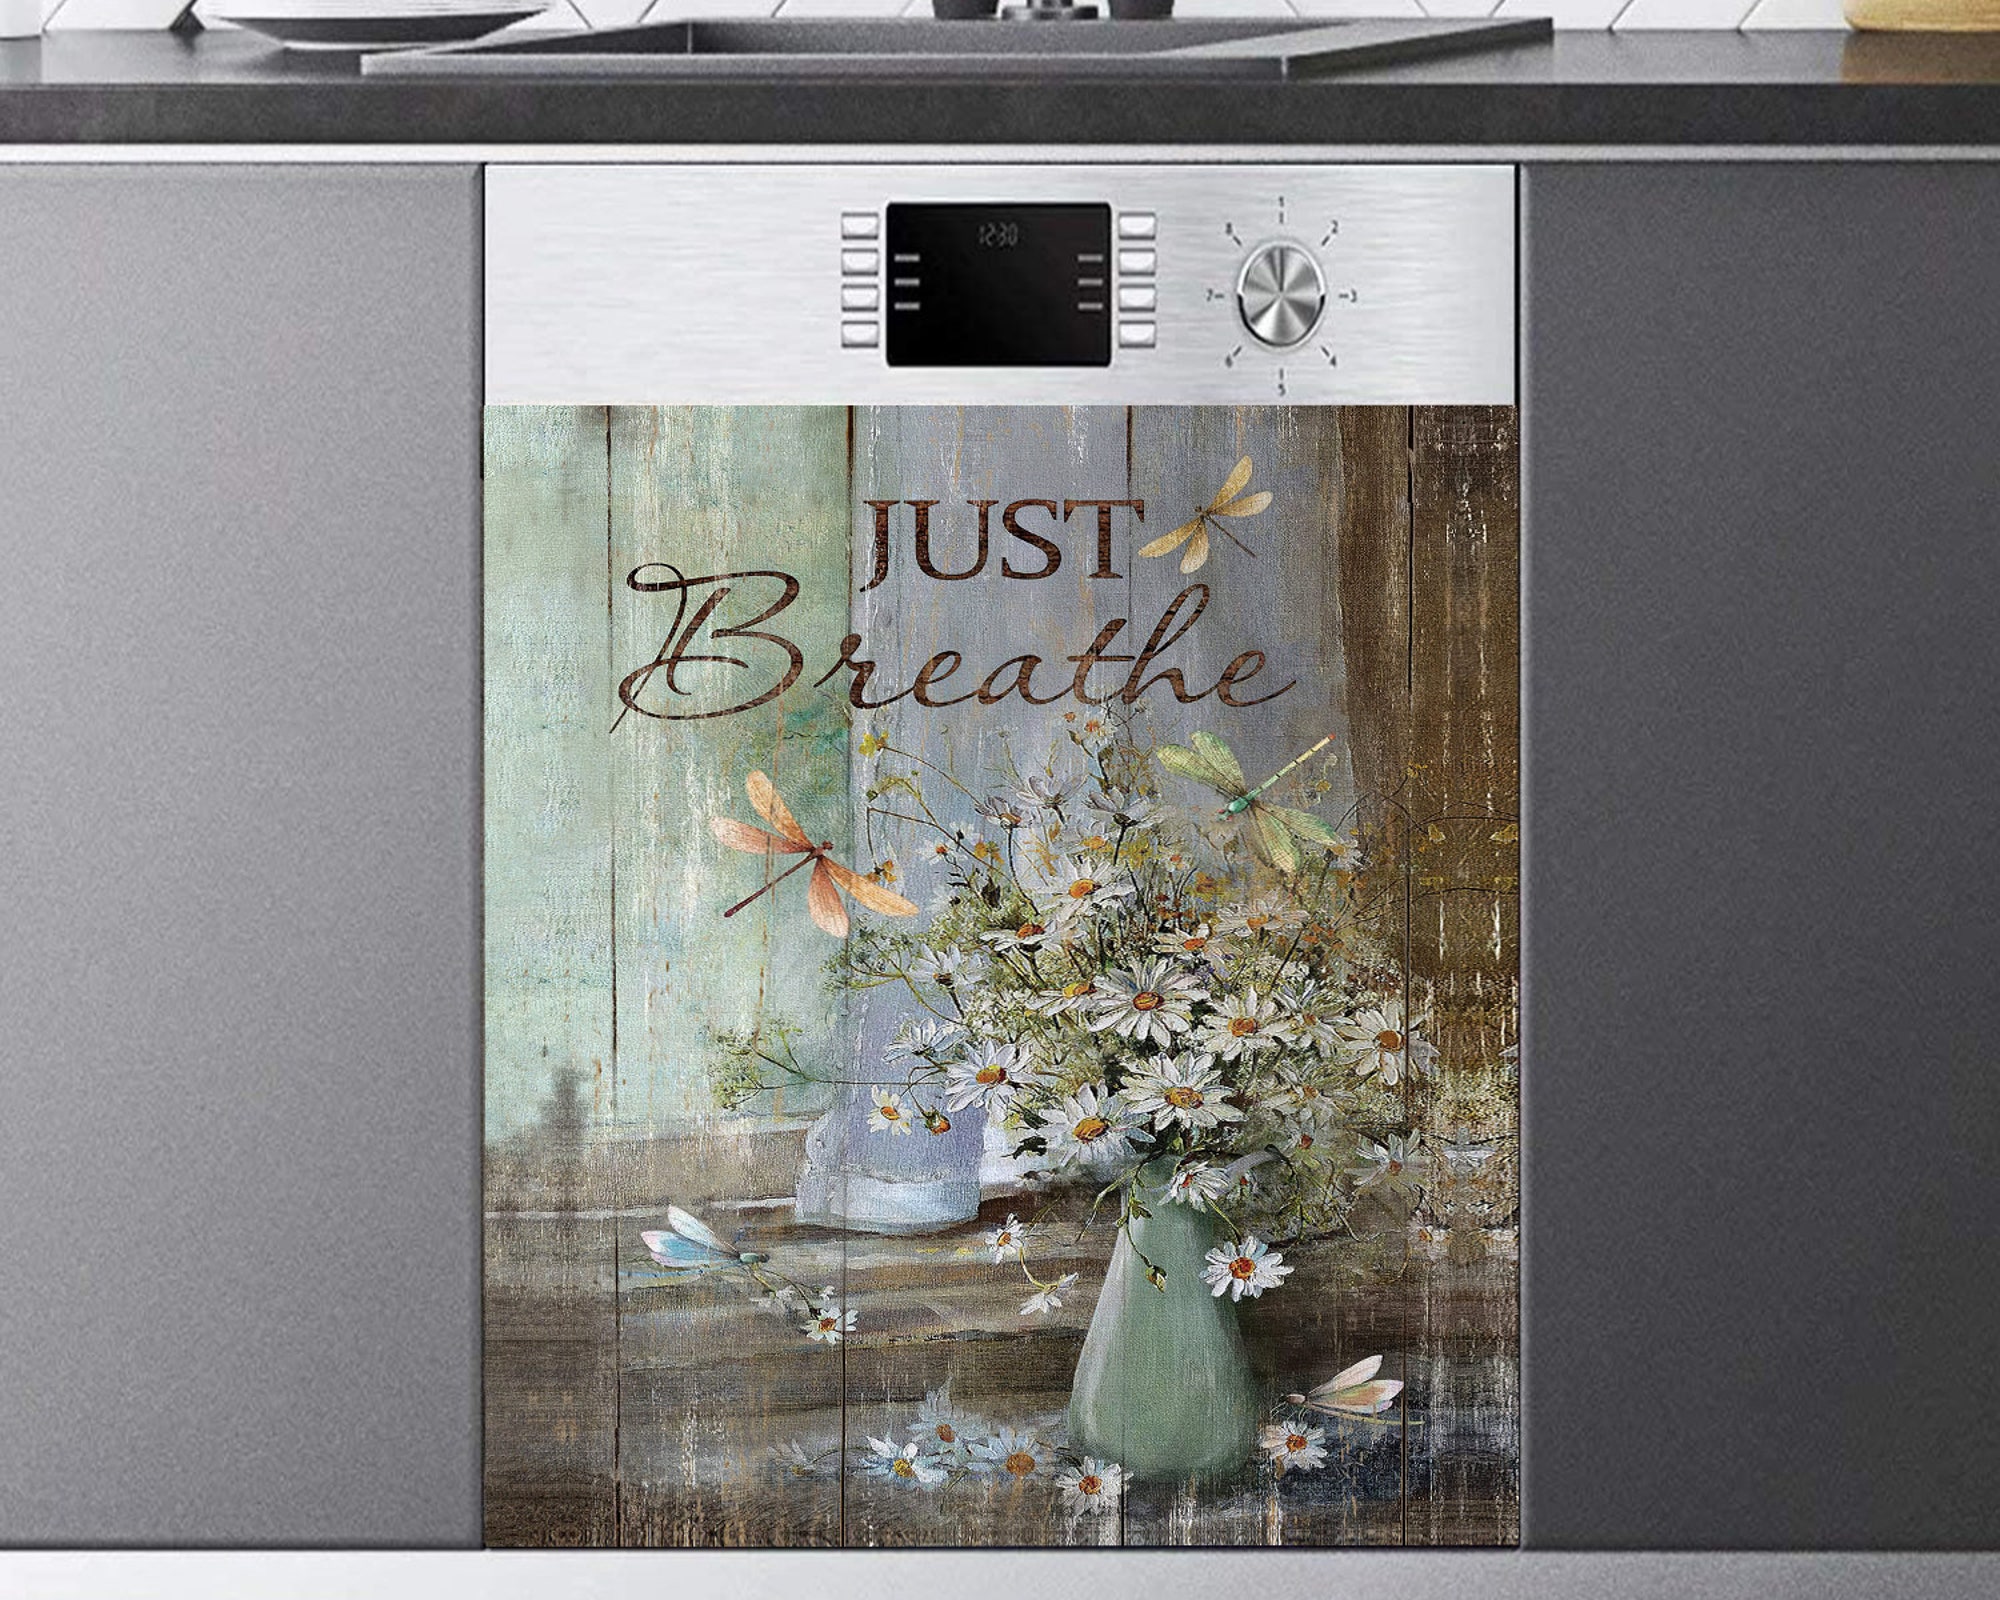 Just breathe -Daisy flower, Kitchen Dishwasher Magnet Cover, Kitchen Decor, Dishwasher cover